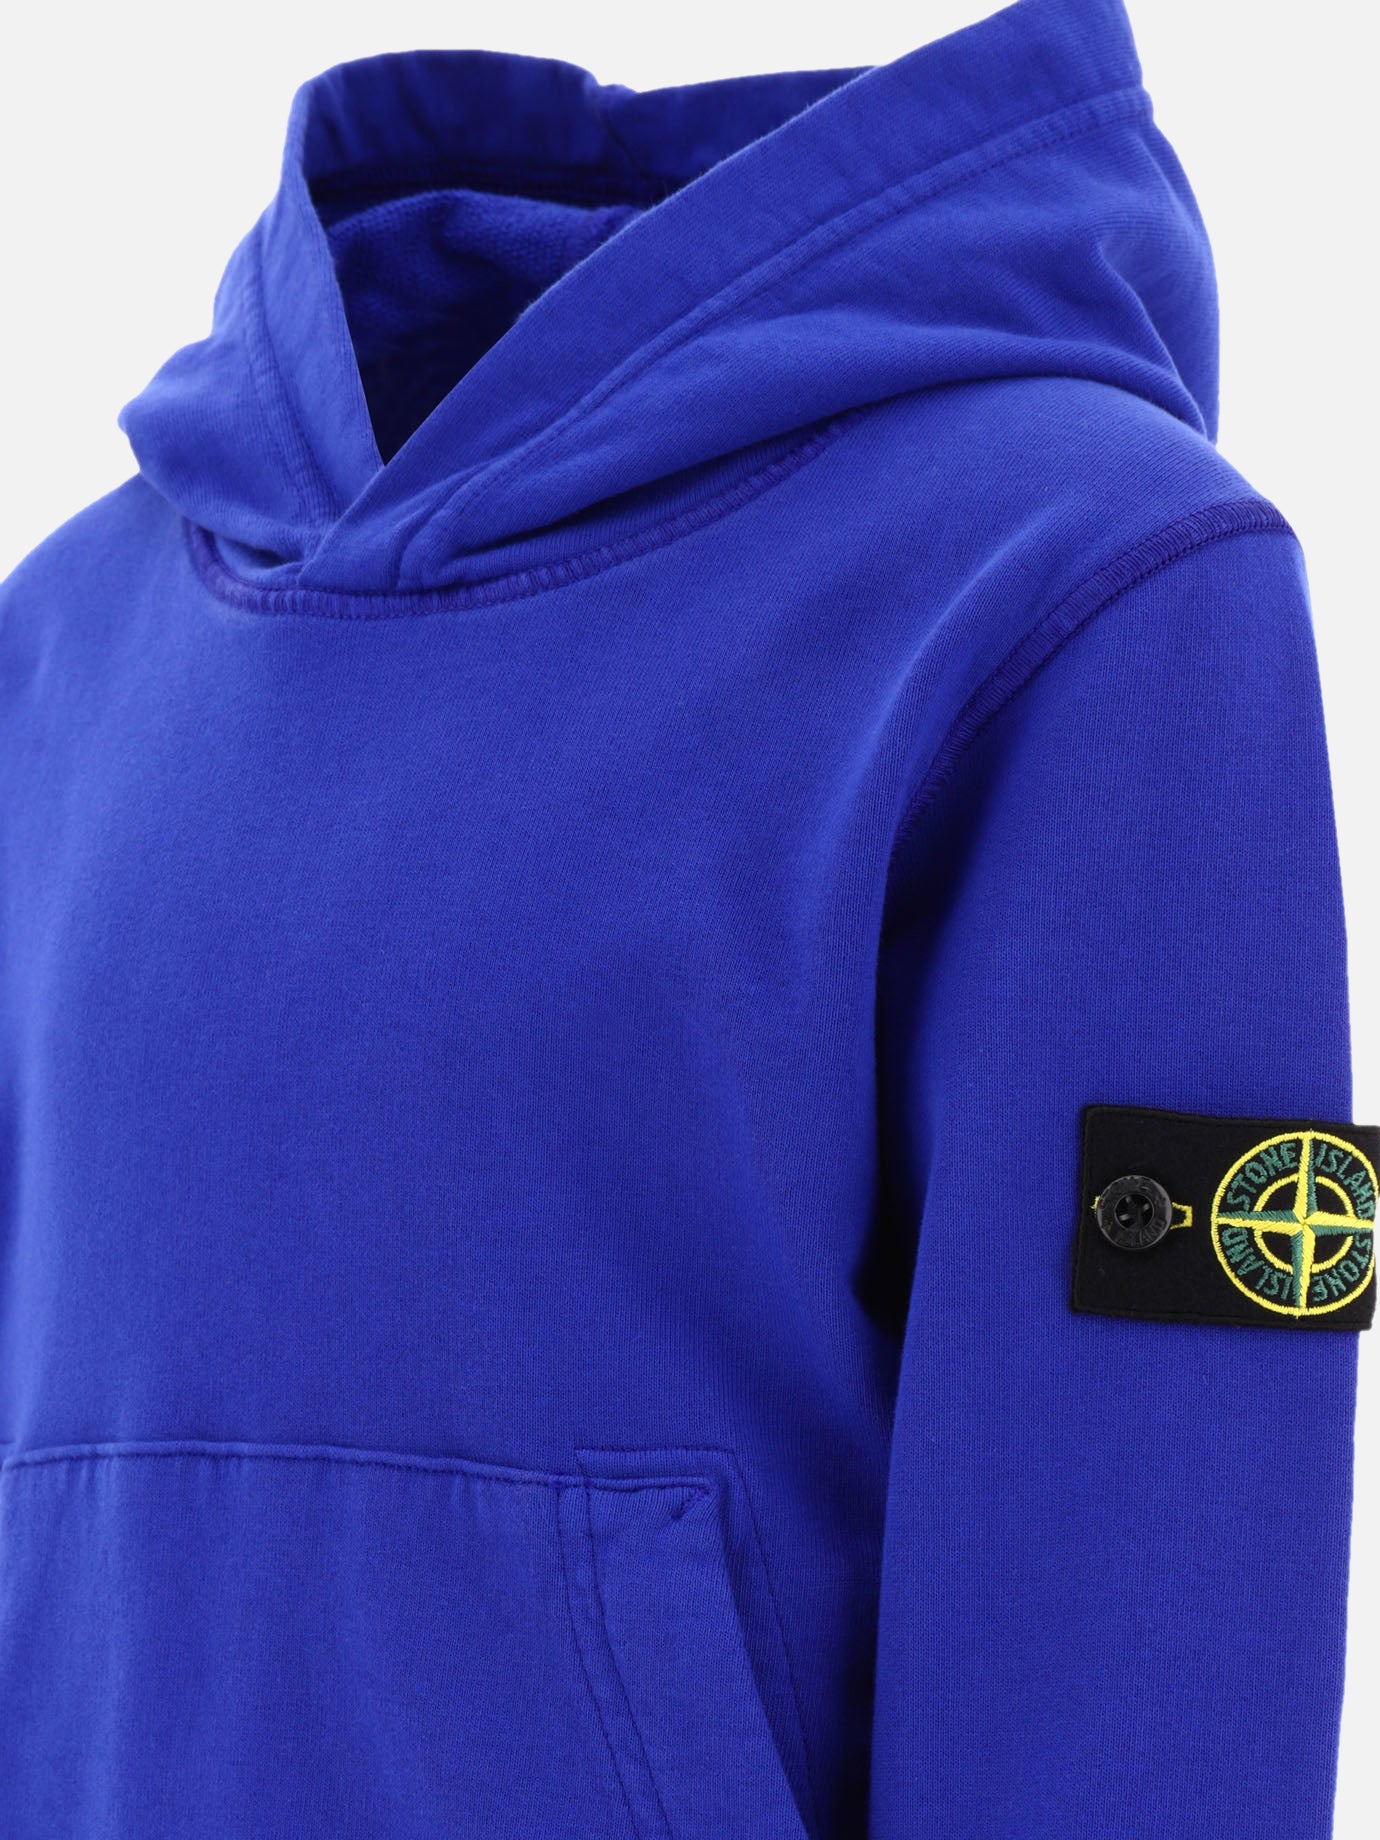 "Compass" hoodie